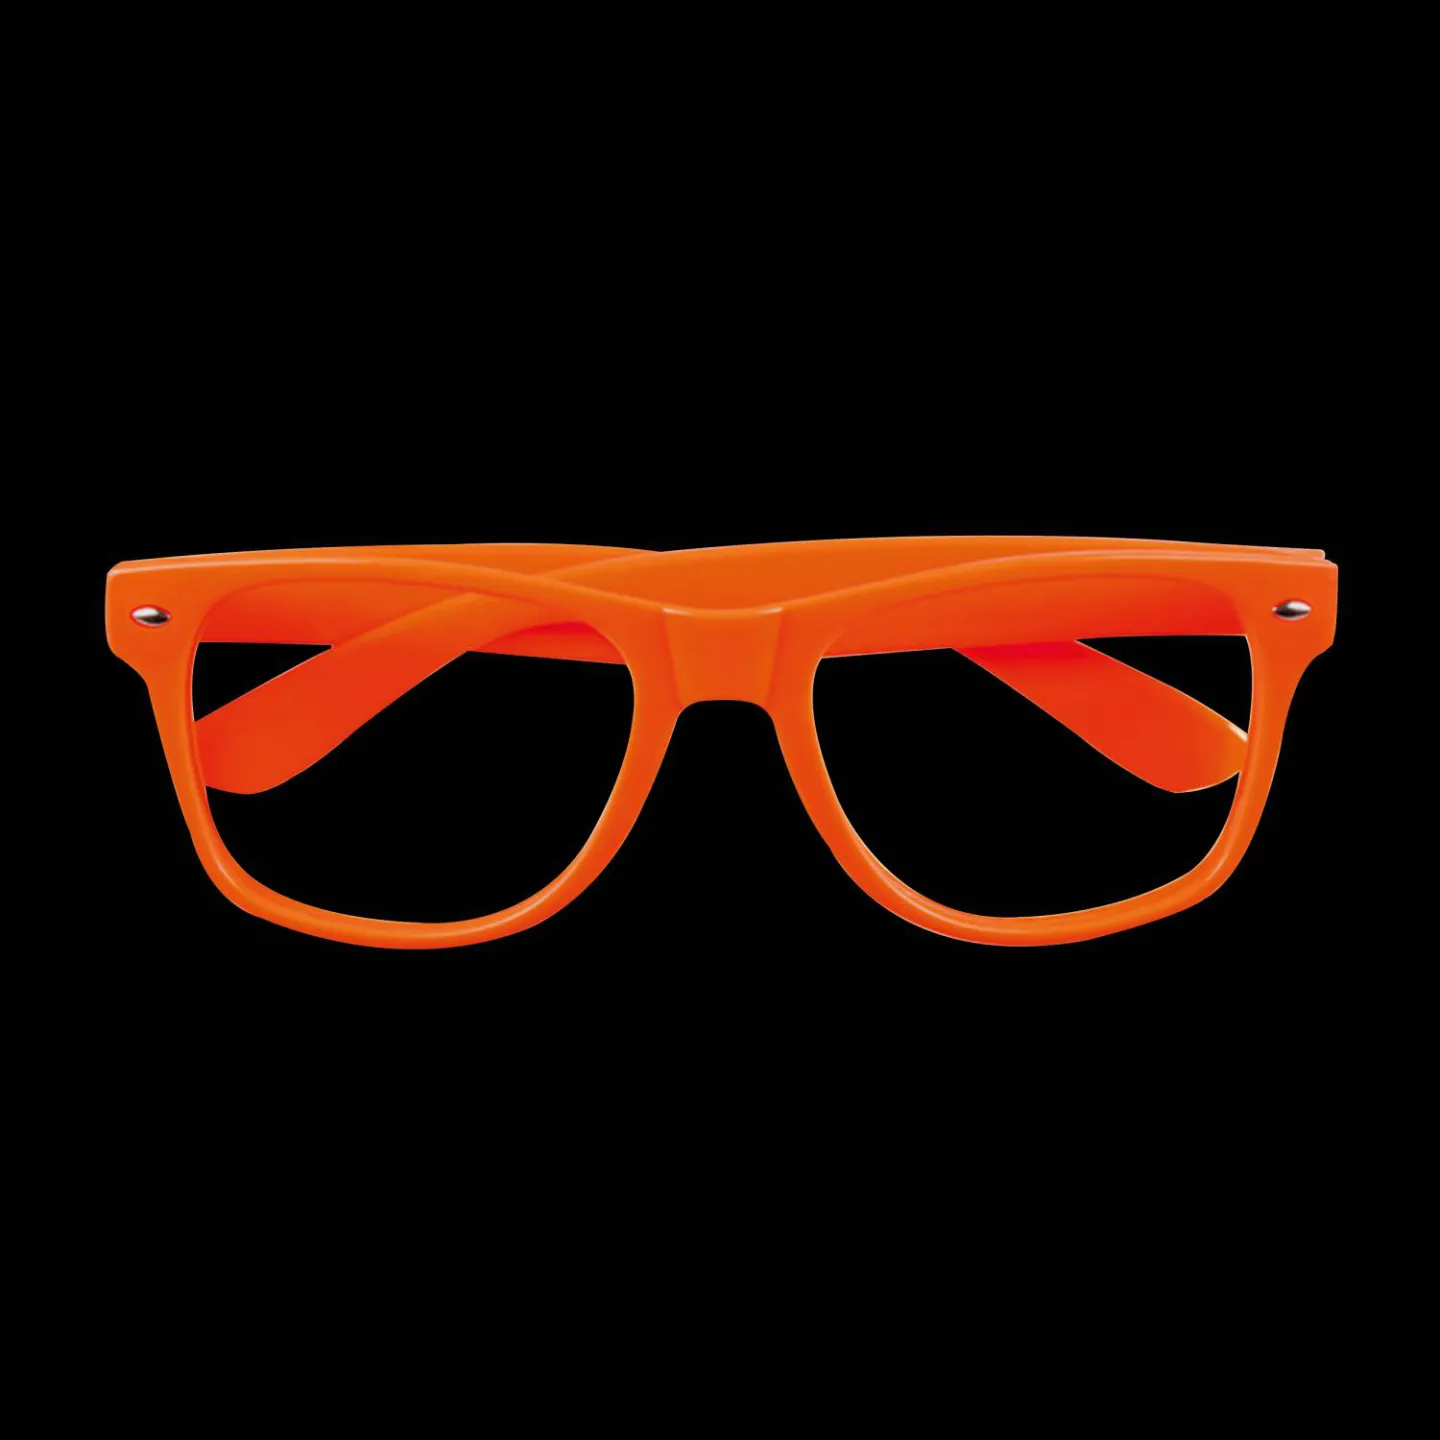 Bril zonder glazen oranje kopen.